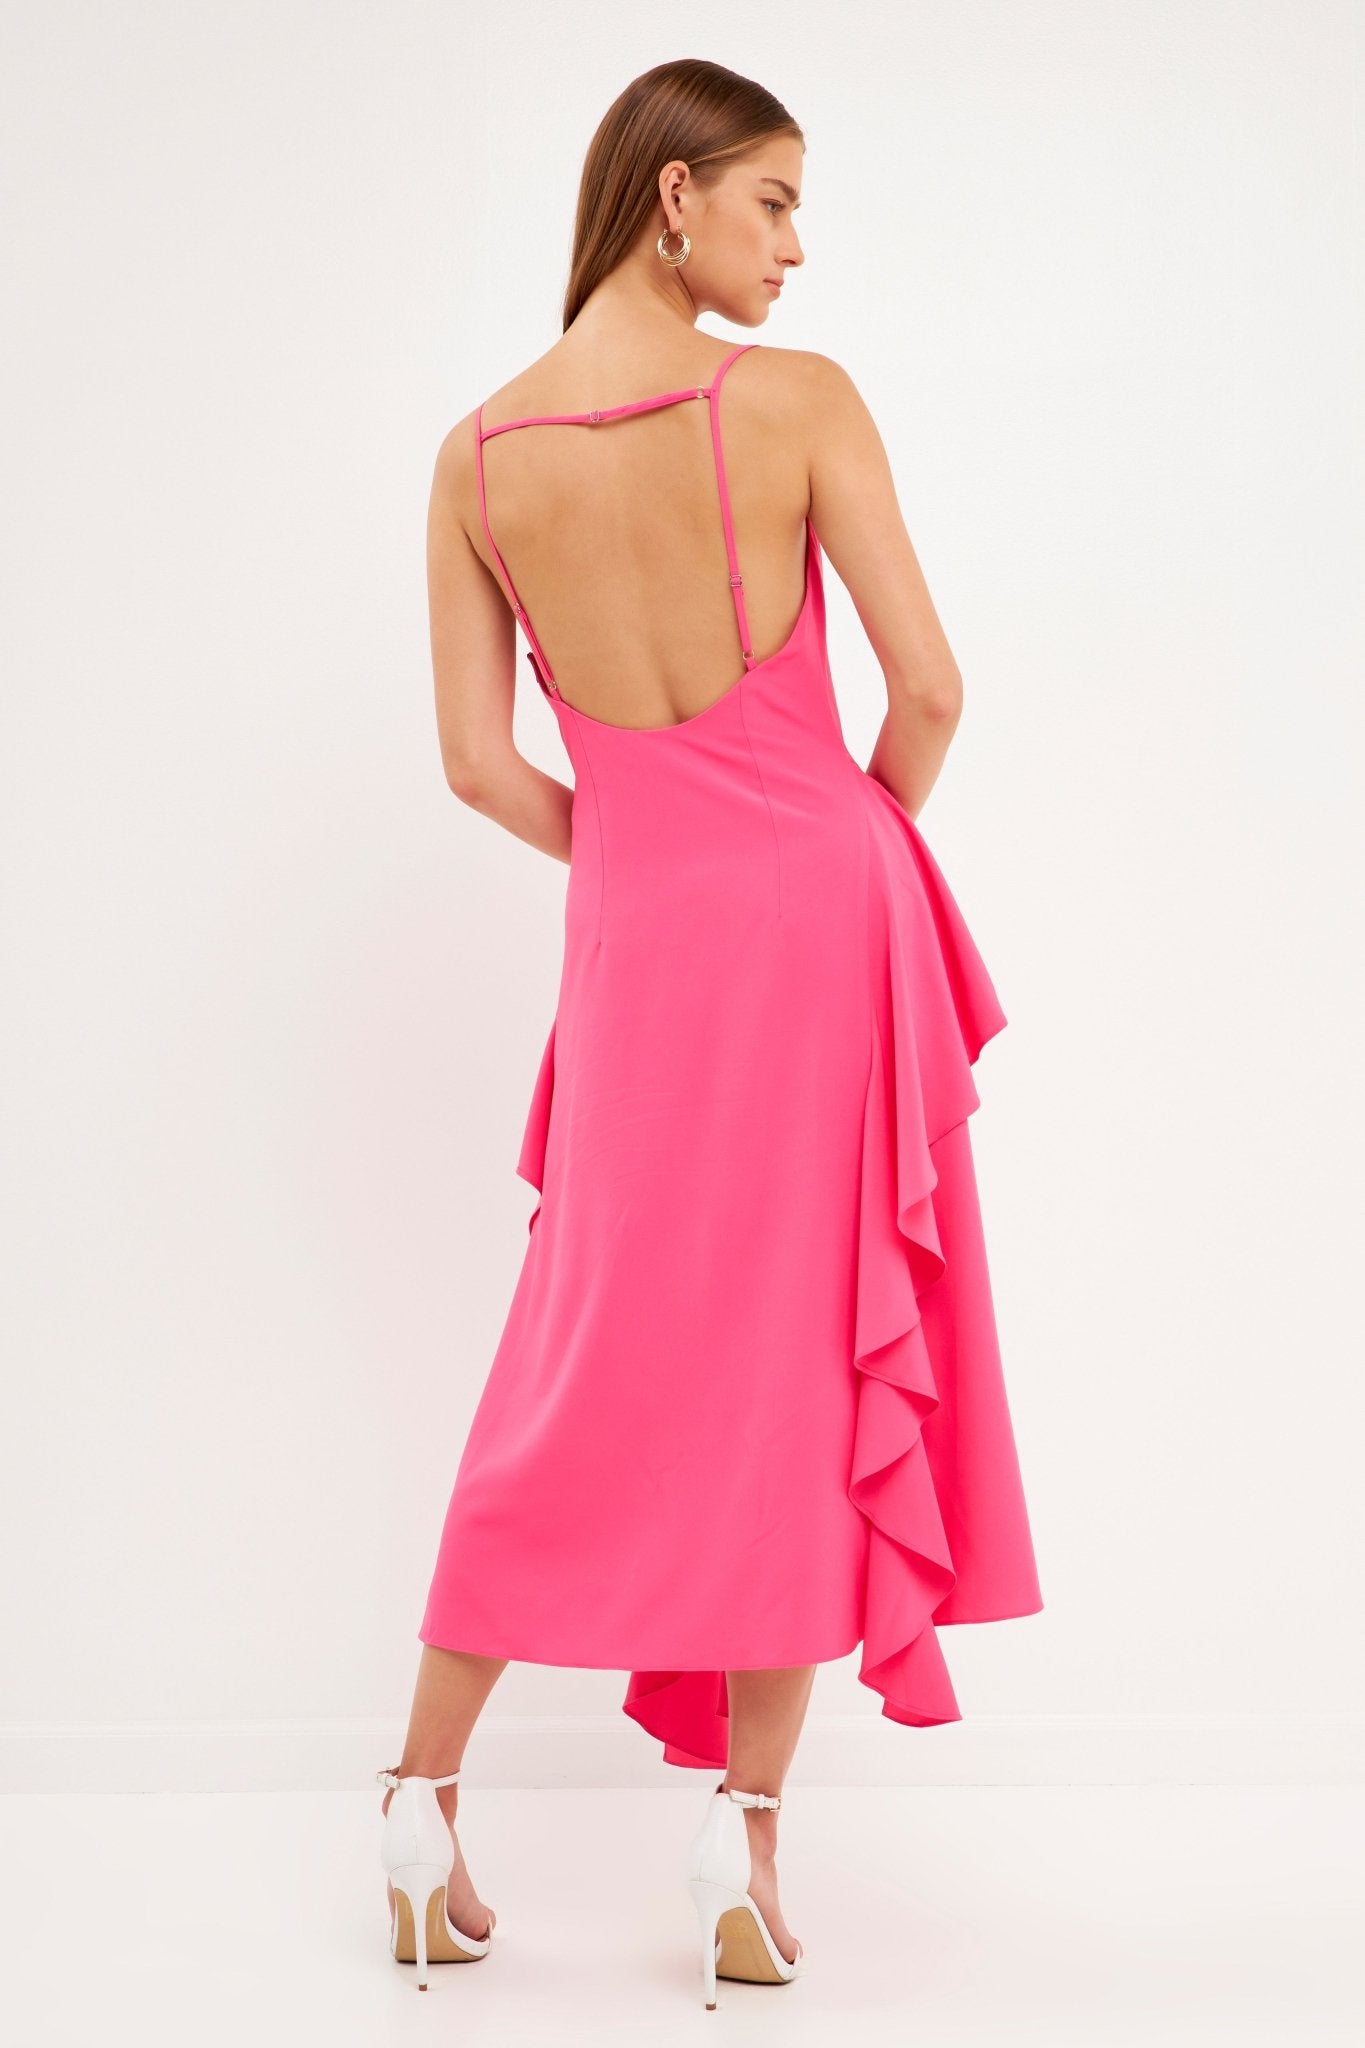 Waterfall Maxi Dress Pink - Lush Lemon - Women's Clothing - Endless Rose - 192934393119